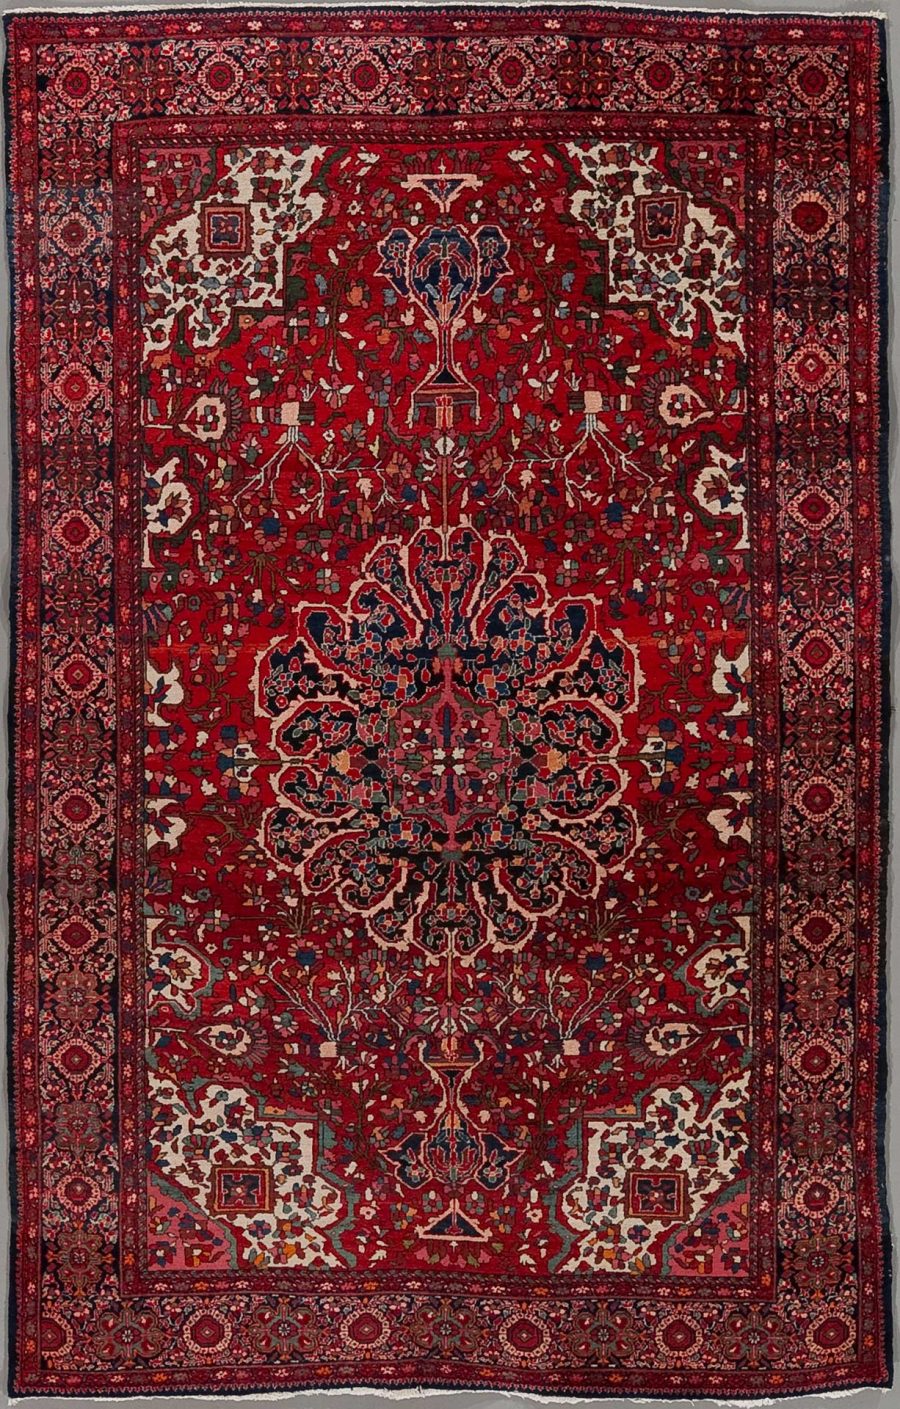 Traditioneller orientalischer Teppich mit komplexem, symmetrischem Muster in vorrangig roten und blauen Tönen, umgeben von mehreren dekorativen Rändern.